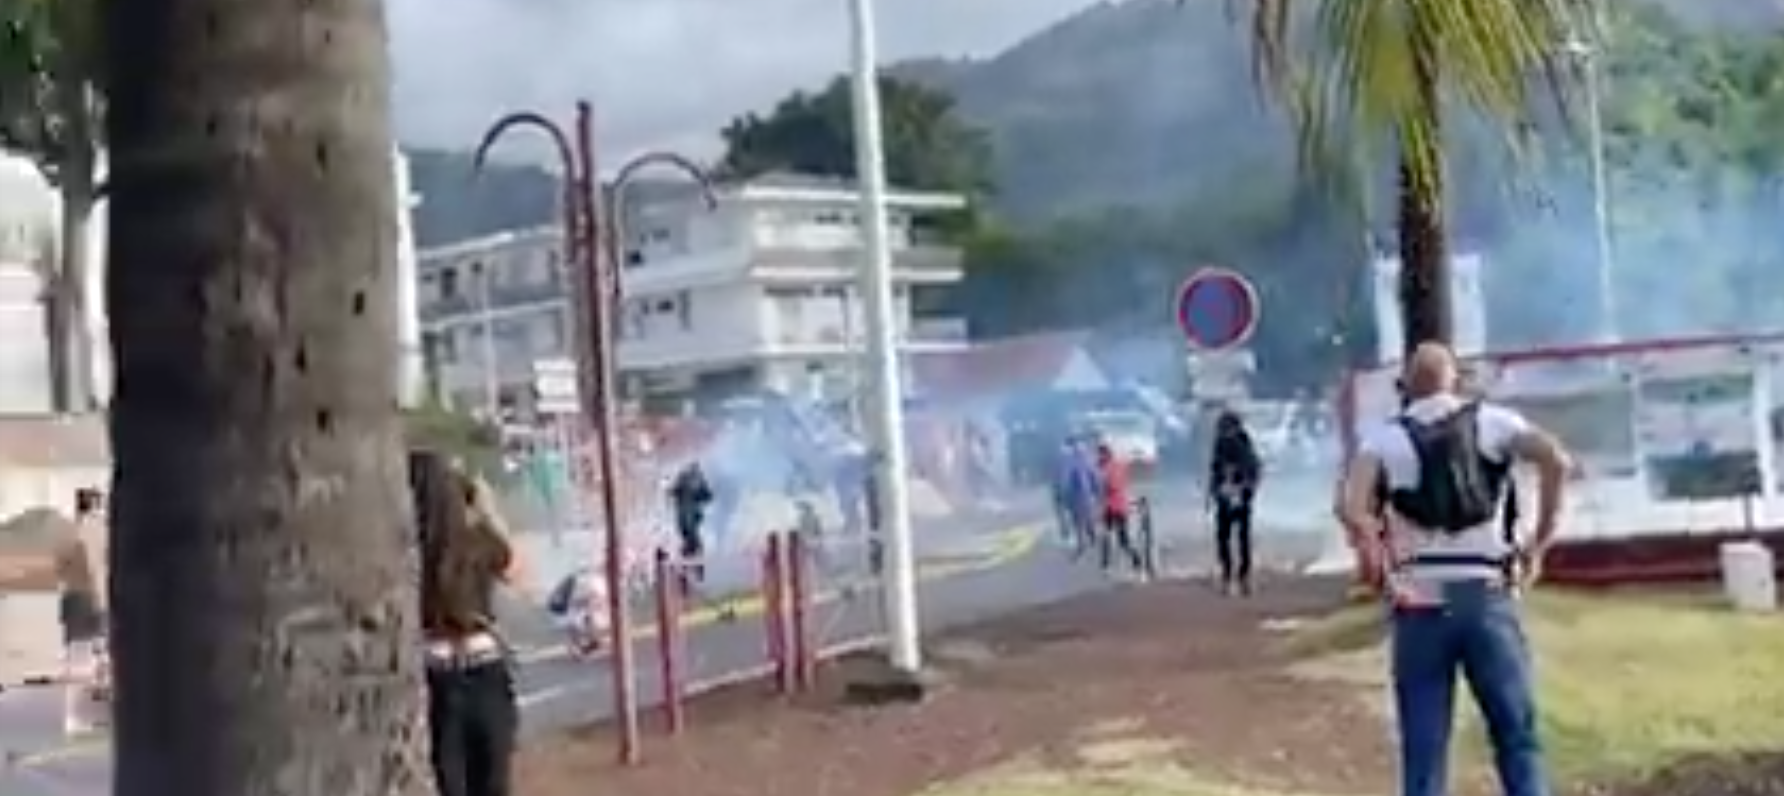 [LIVE] Manifestation anti-pass sanitaire : Des affrontements à Saint-Denis 